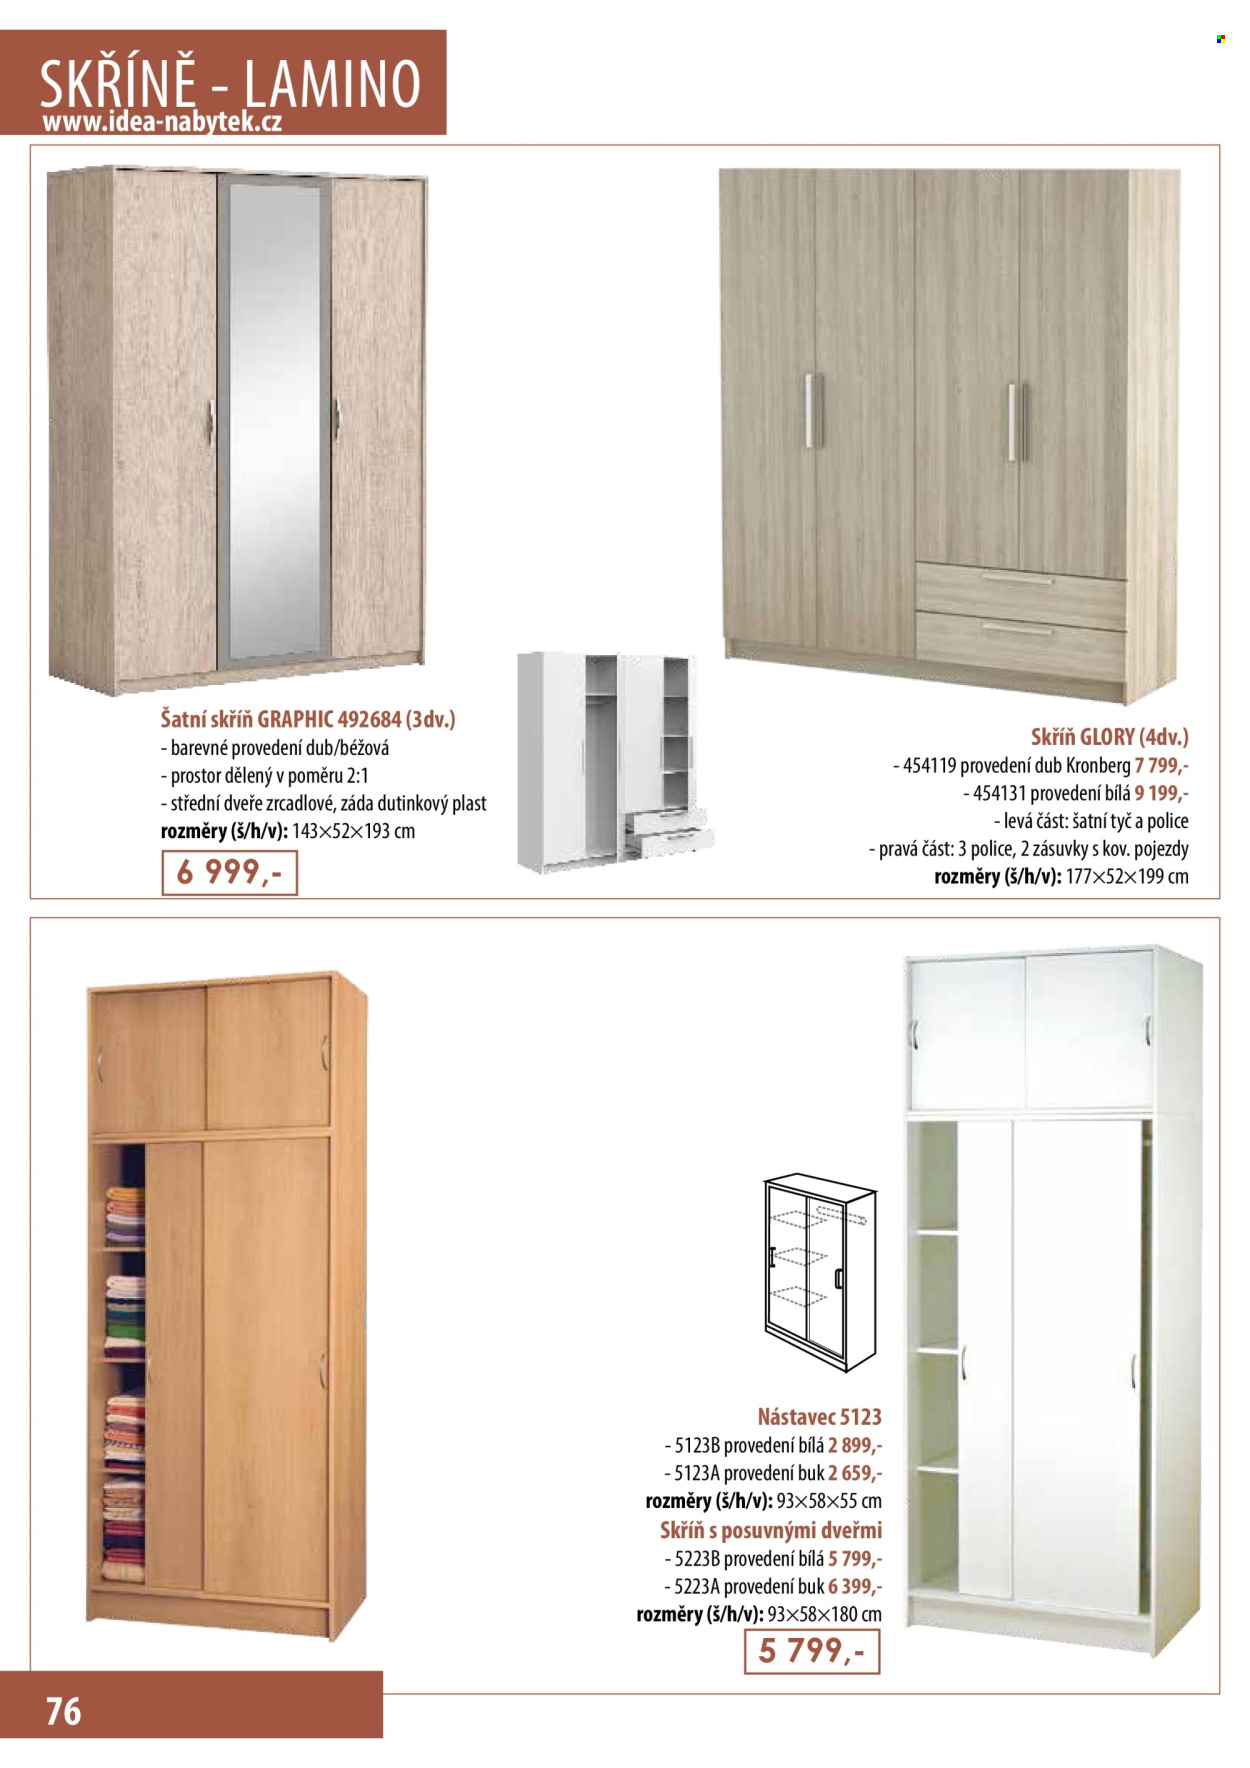 thumbnail - Leták IDEA nábytek - Produkty v akci - skříň, skříň s posuvnými dveřmi, šatní skříň. Strana 76.